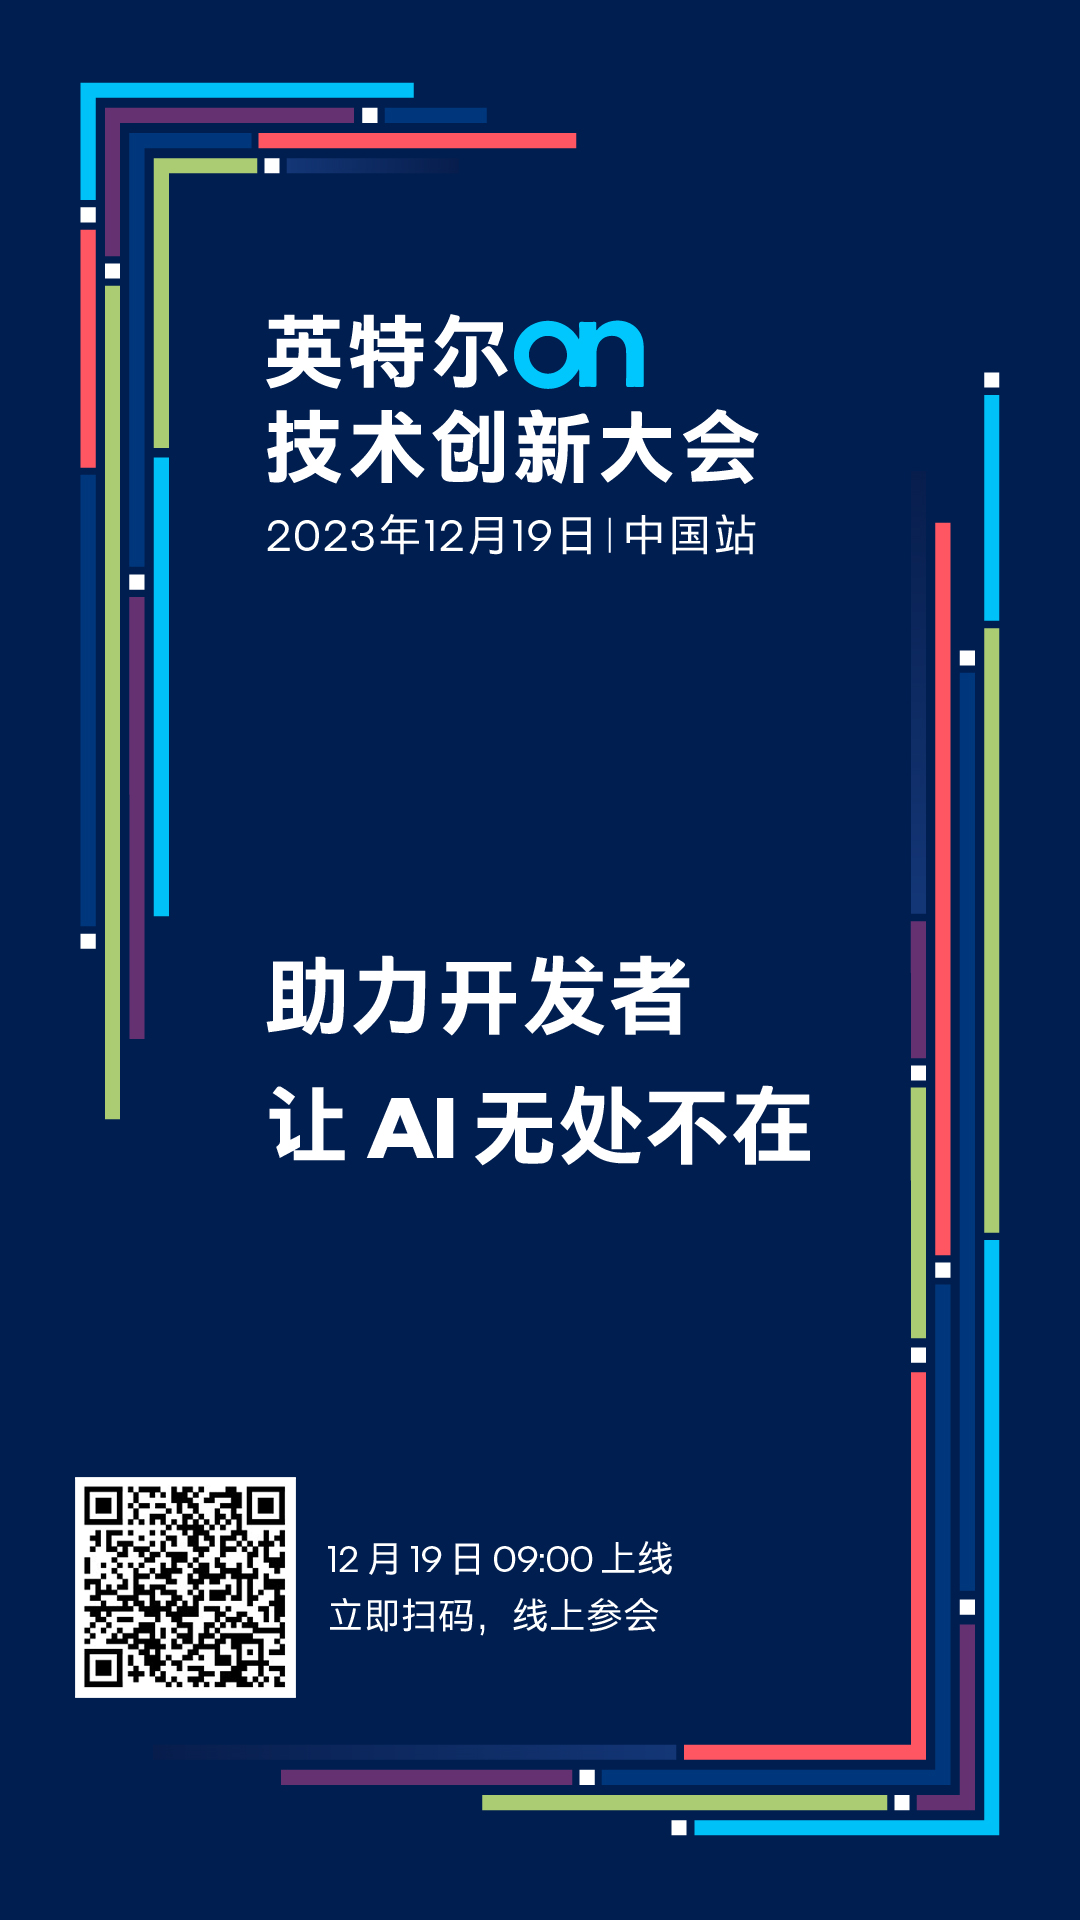 2023 英特尔 On 技术创新大会中国站“剧透”：五大专题论坛，全面赋能 AI 开发